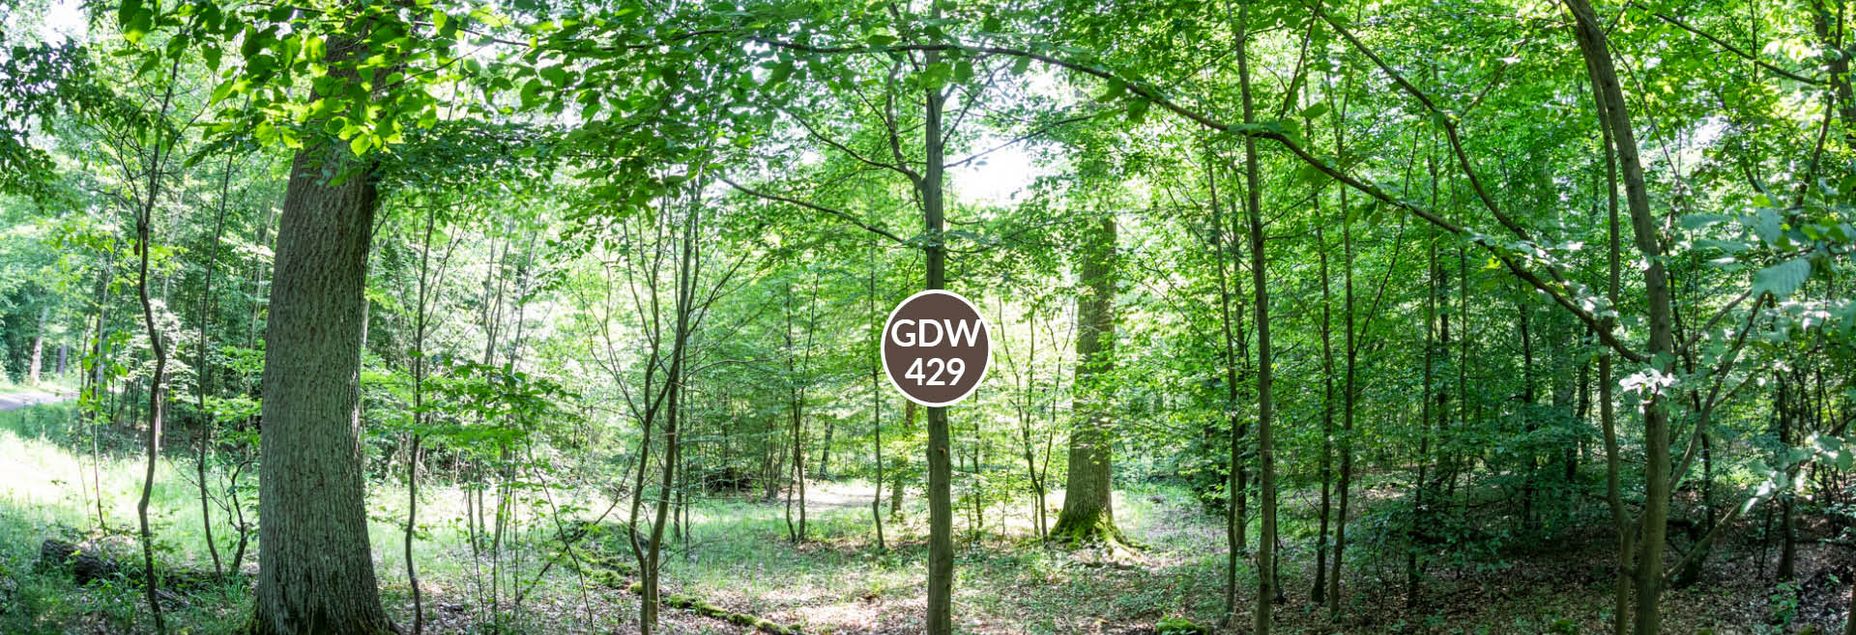 FriedWald-Onlineshop GDW 429